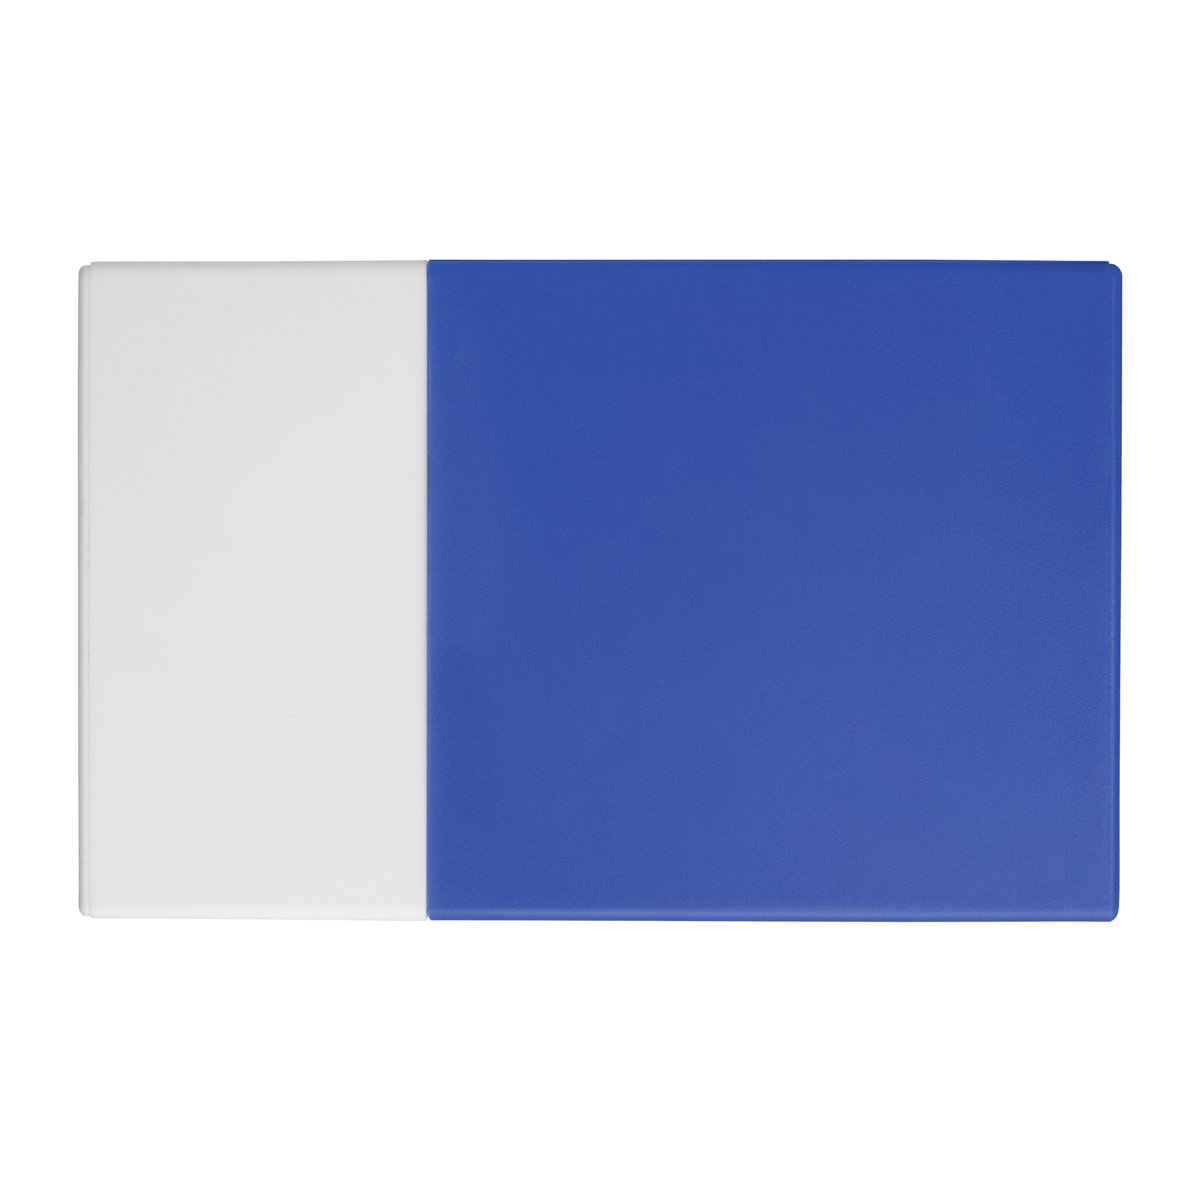 Kredit- und Visitenkartenbox REFLECTS-KELMIS weiß/blau